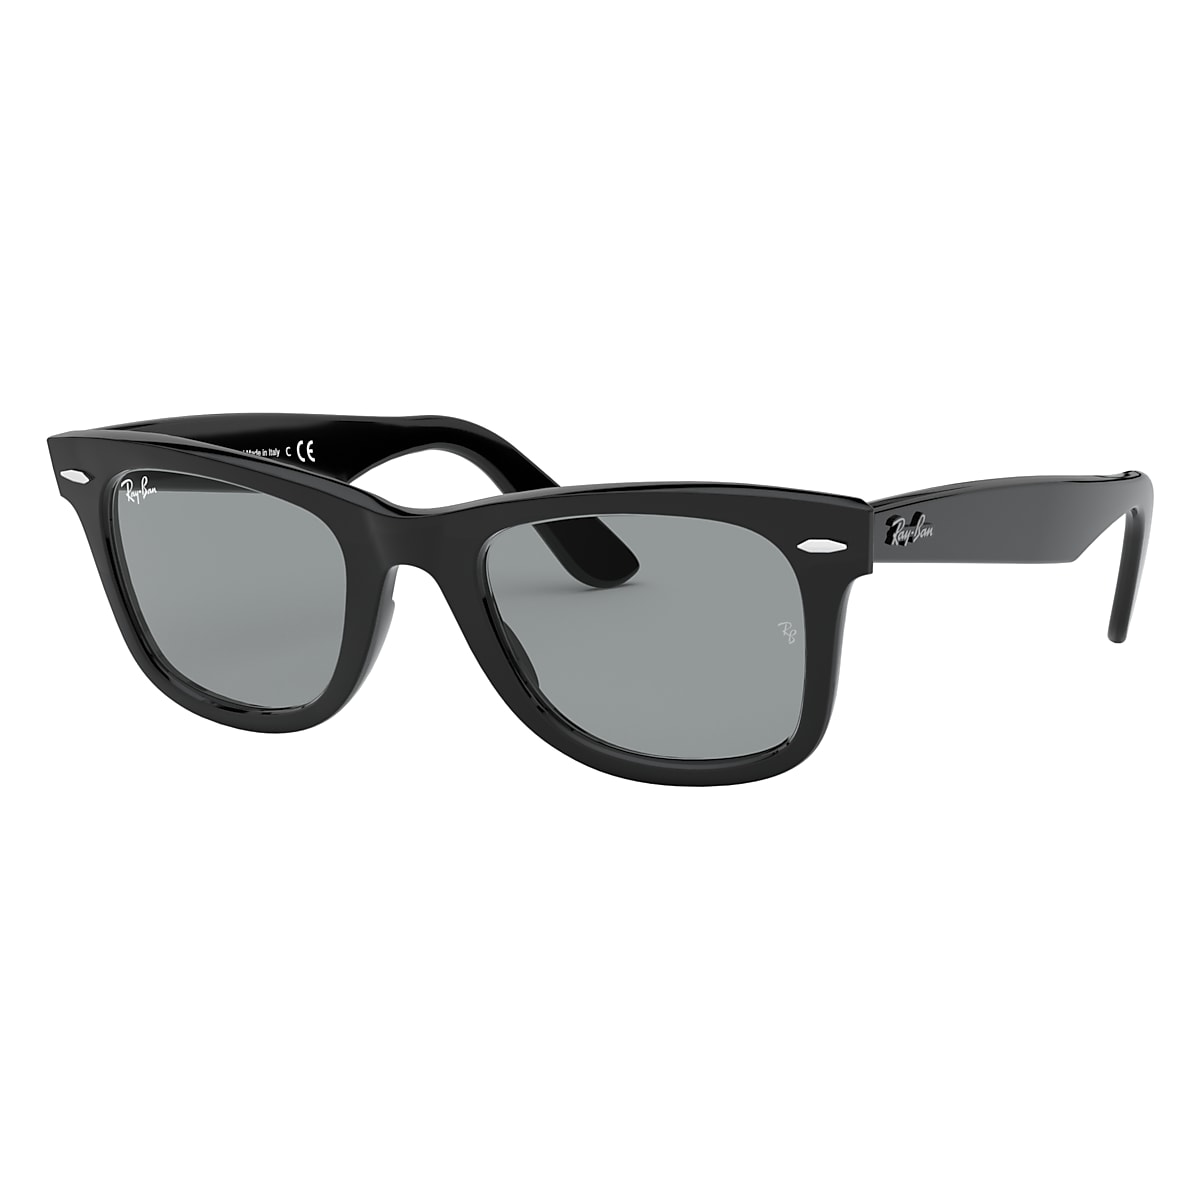 ORIGINAL WAYFARER WASHED LENSES Sunglasses in Black 